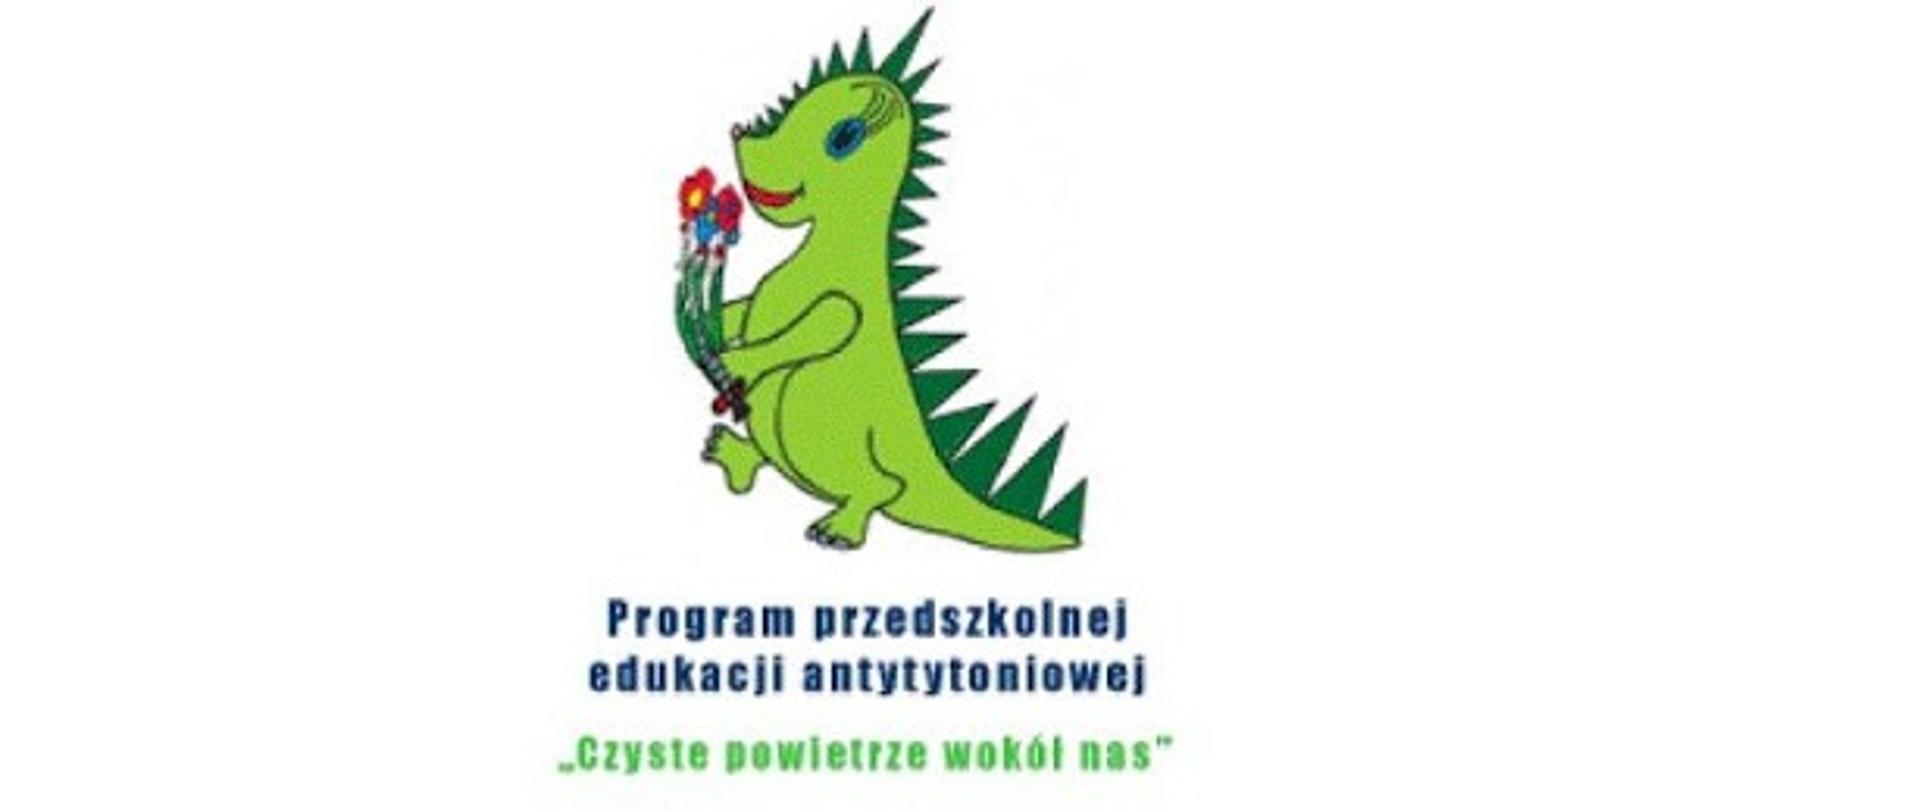 Na obrazku widoczny uśmiechnięty zielony dinozaur, niosący kolorowe kwiatki. Pod obrazkiem widnieje napis -Program przedszkolnej edukacji antytytoniowej "Czyste powietrze wokół nas"